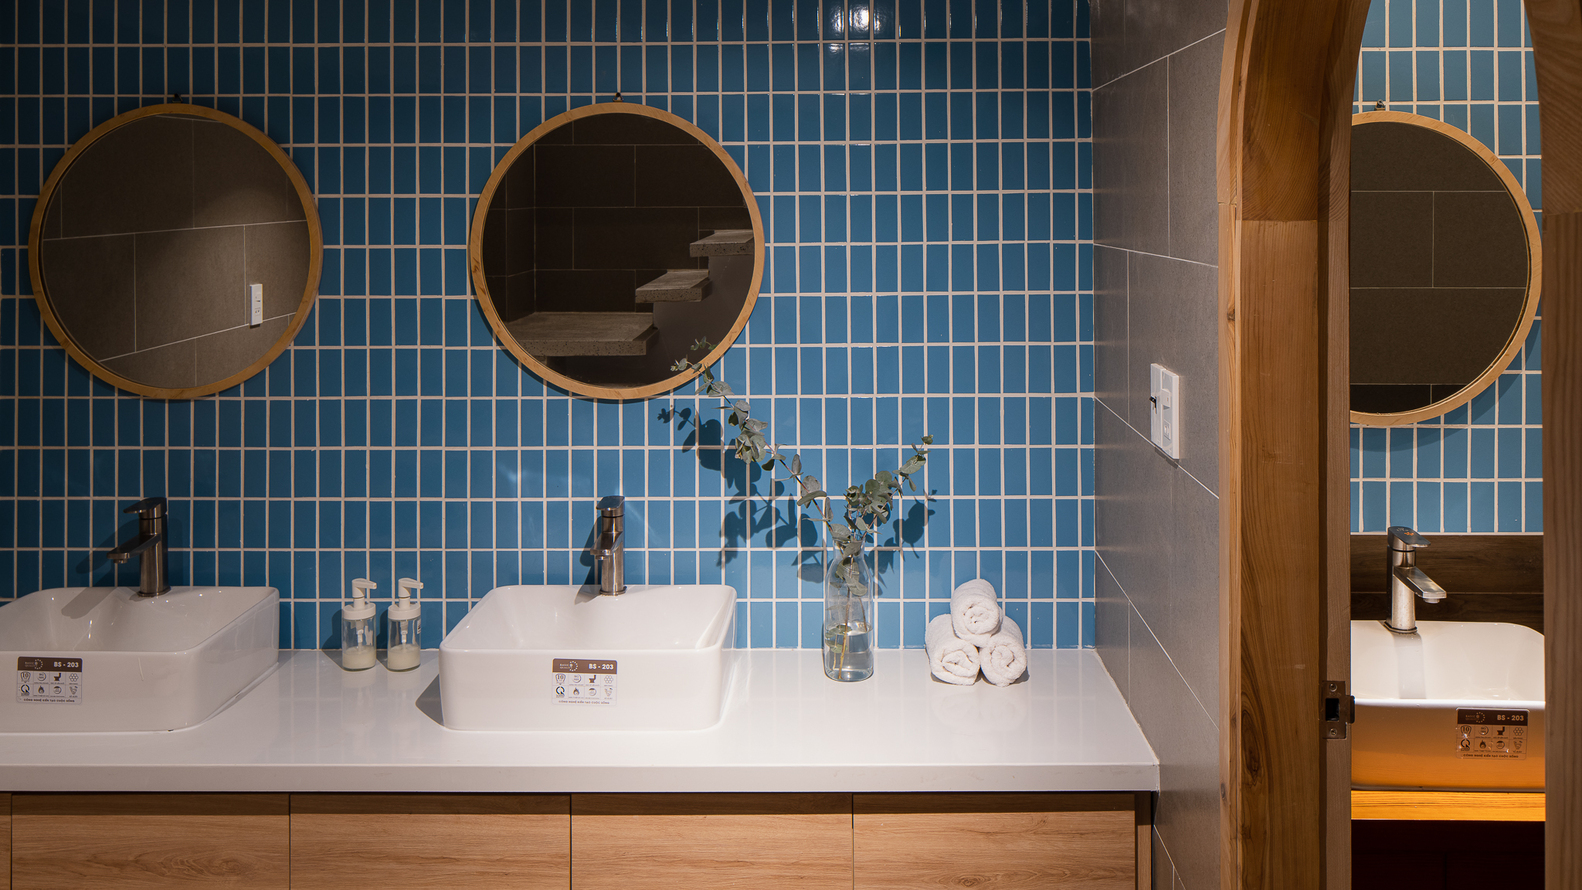 Hình ảnh một góc phòng tắm với tường ốp gạch màu xanh dương, gương tròn đôi, bồn rửa đôi